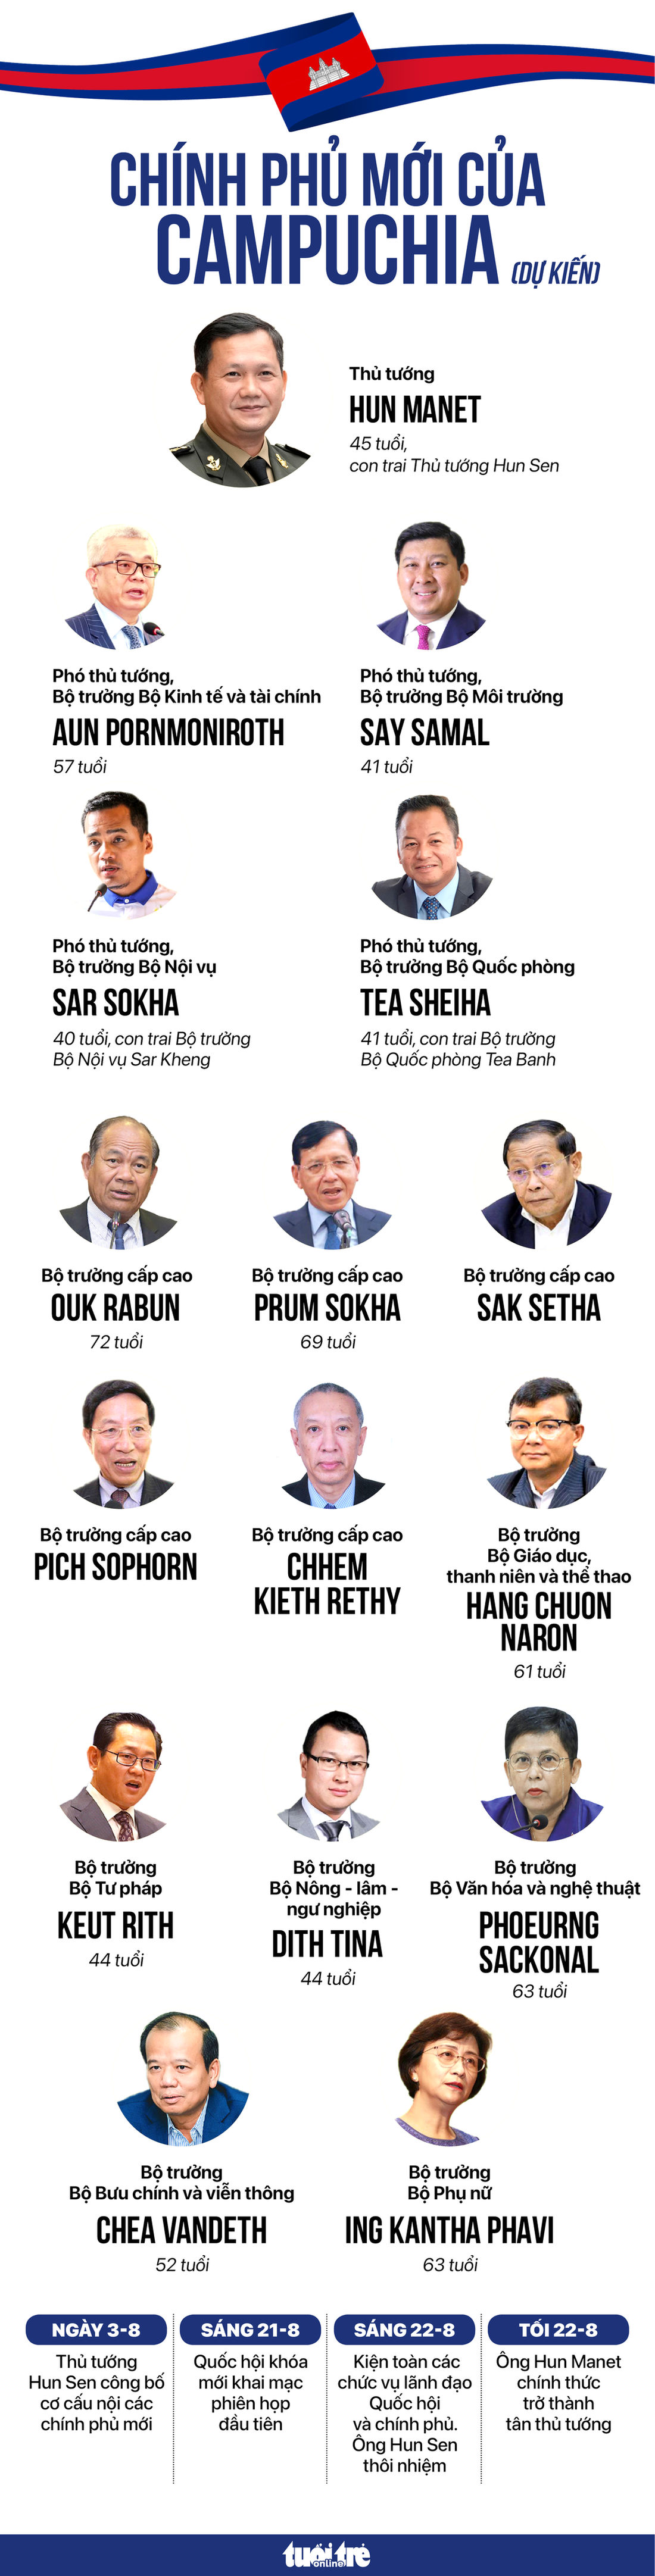 Dự kiến các thành viên Chính phủ mới của Campuchia (còn khuyết một số vị trí), cập nhật đến ngày 27-7 - Đồ họa: NGỌC ĐỨC - NGỌC THÀNH